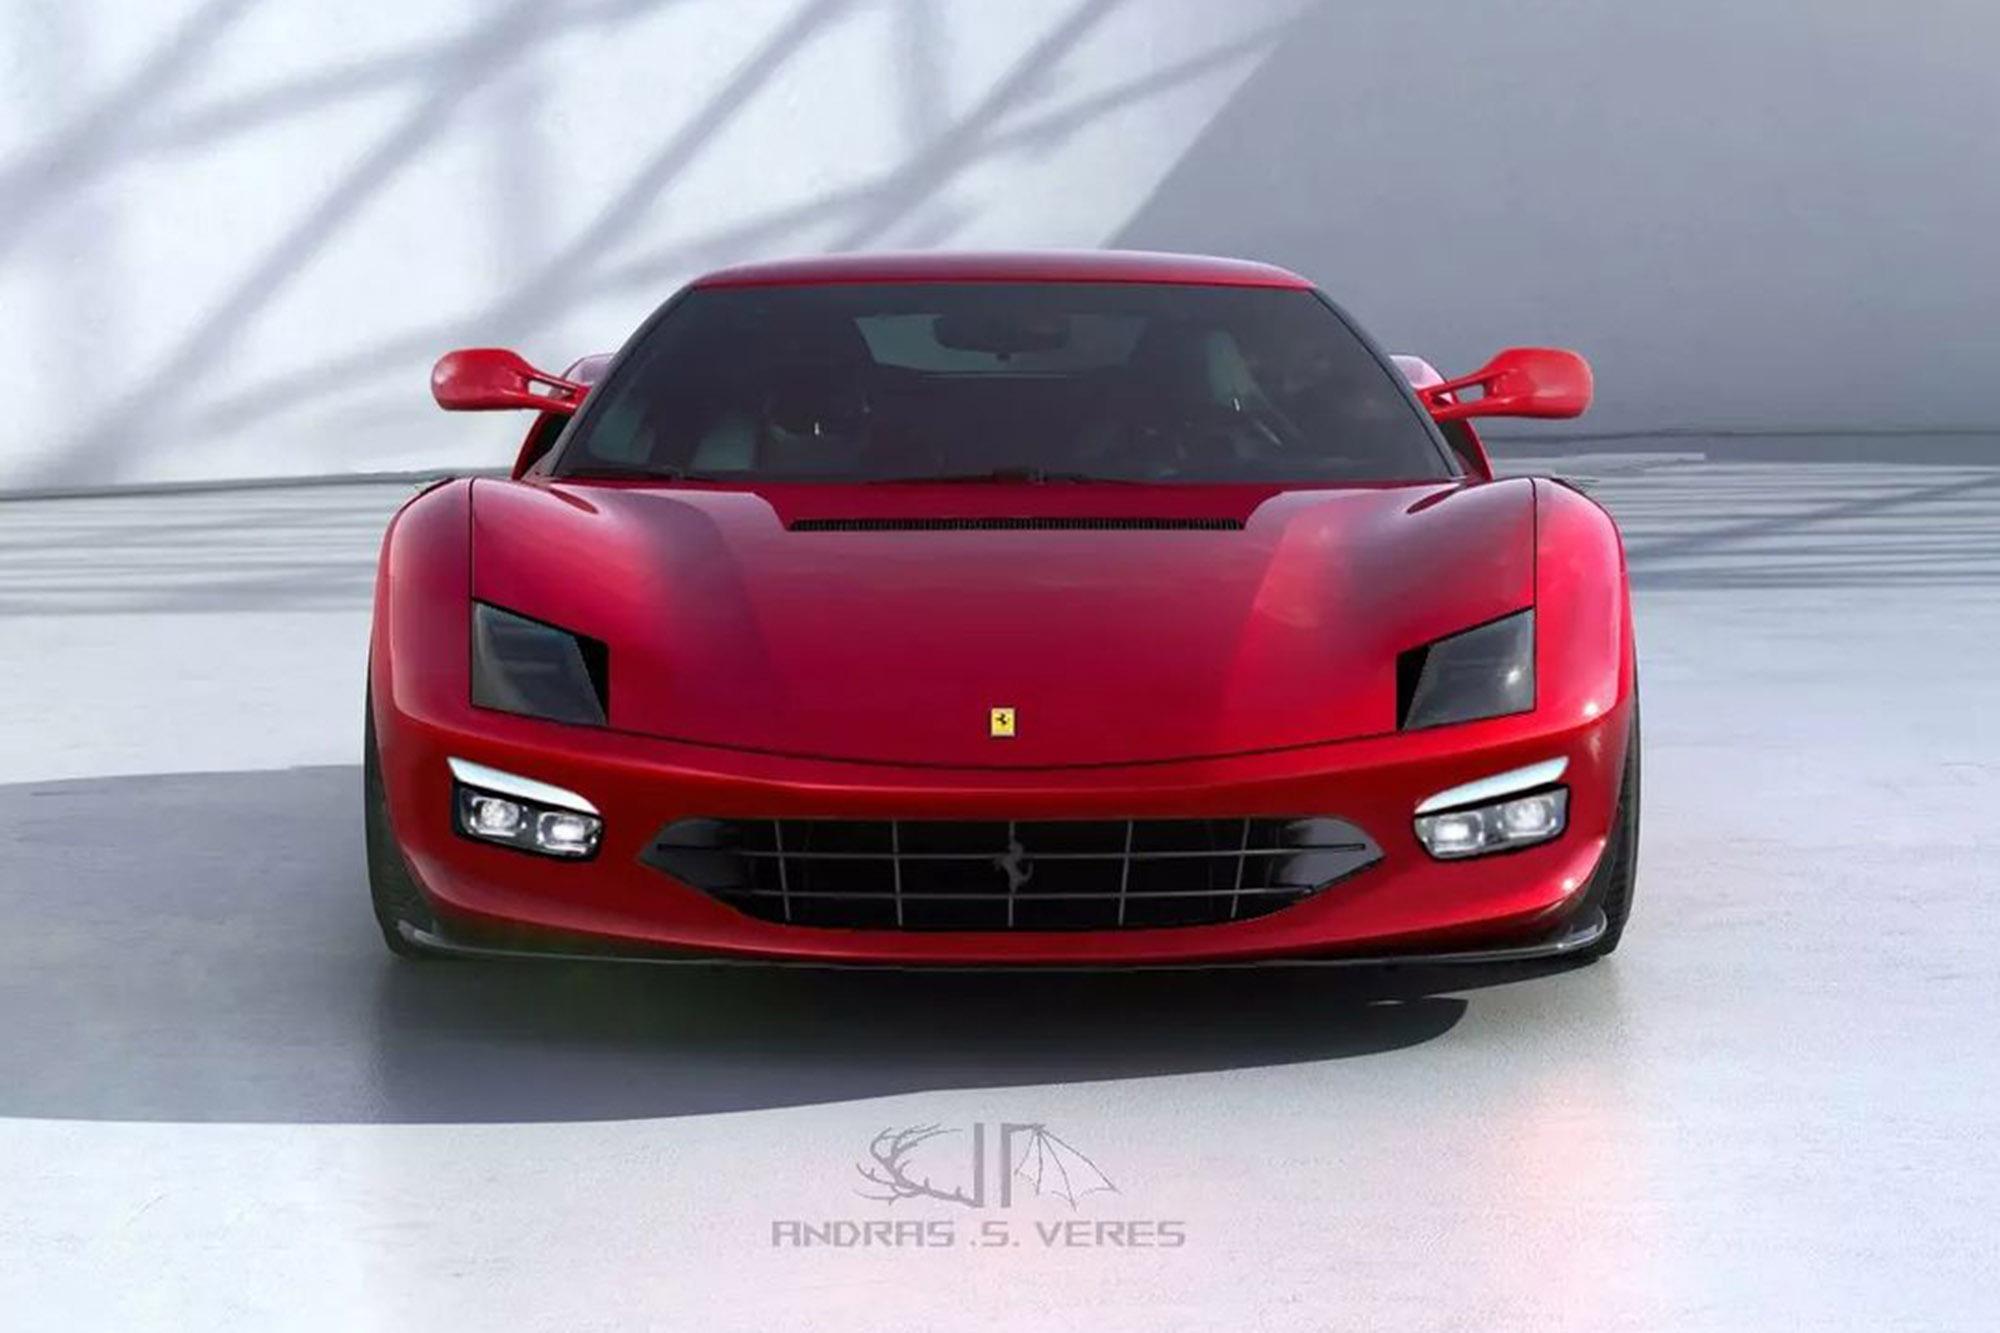 Θέλετε μία σύγχρονη Ferrari Testarossa;